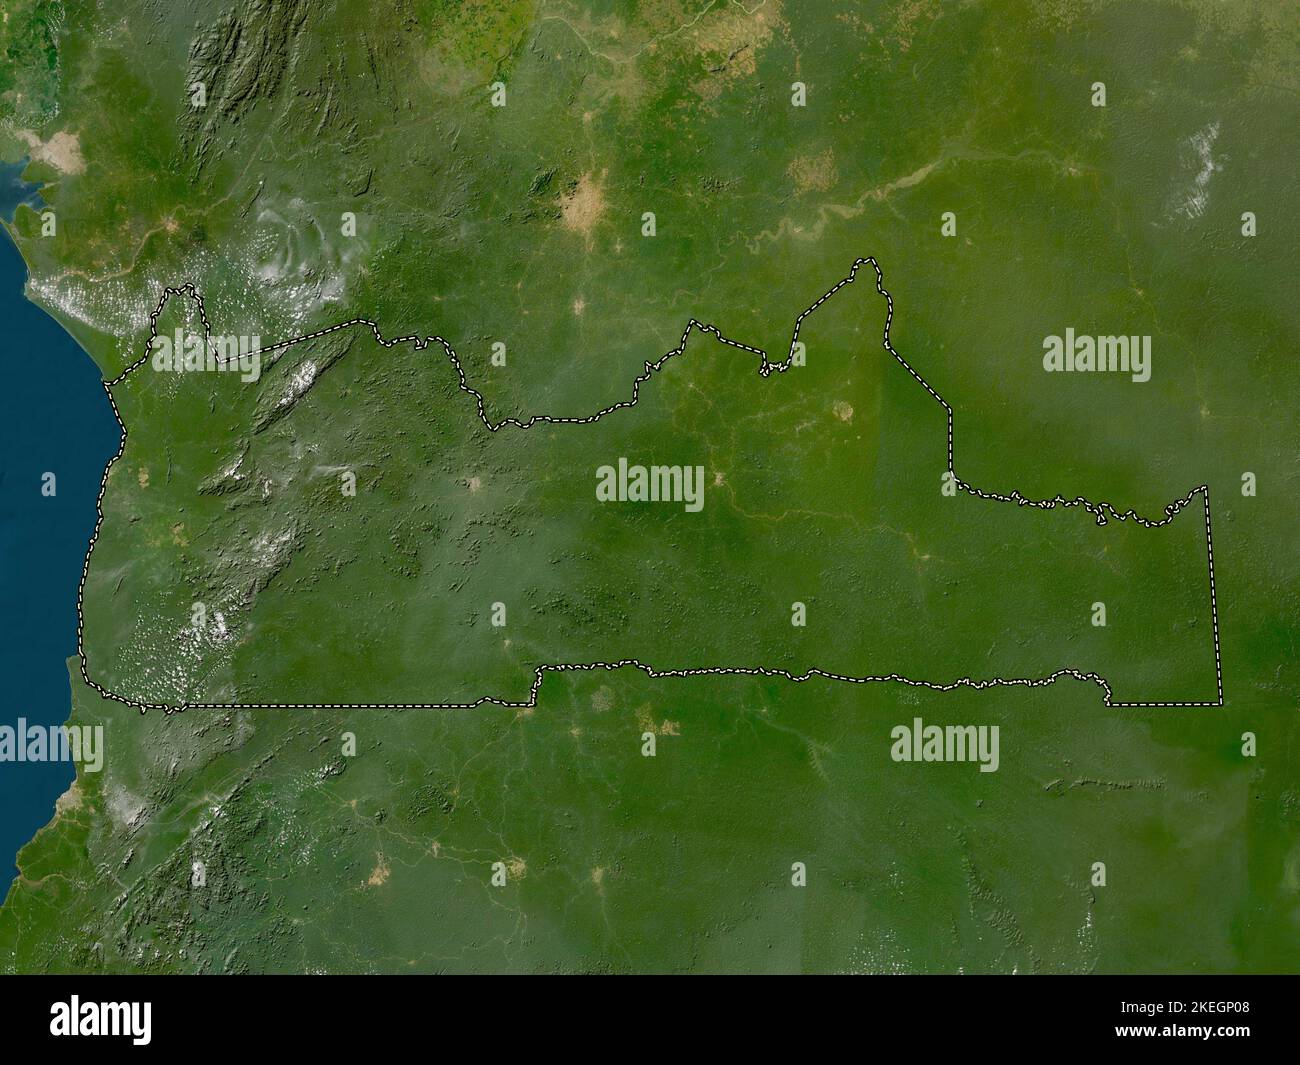 Sud, région du Cameroun. Carte satellite basse résolution Banque D'Images